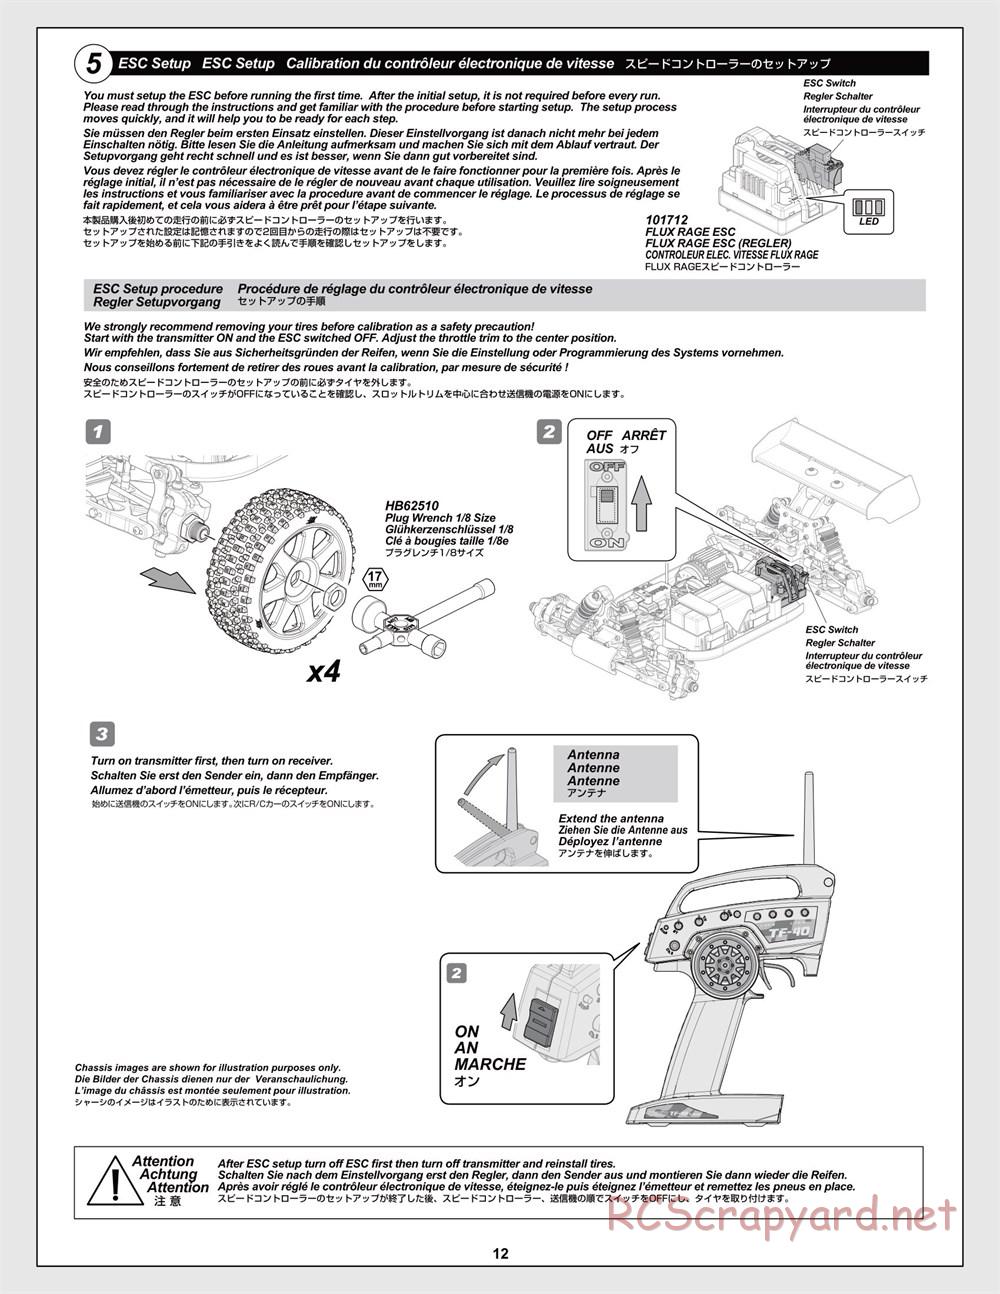 HPI - Trophy Flux Buggy - Manual - Page 12